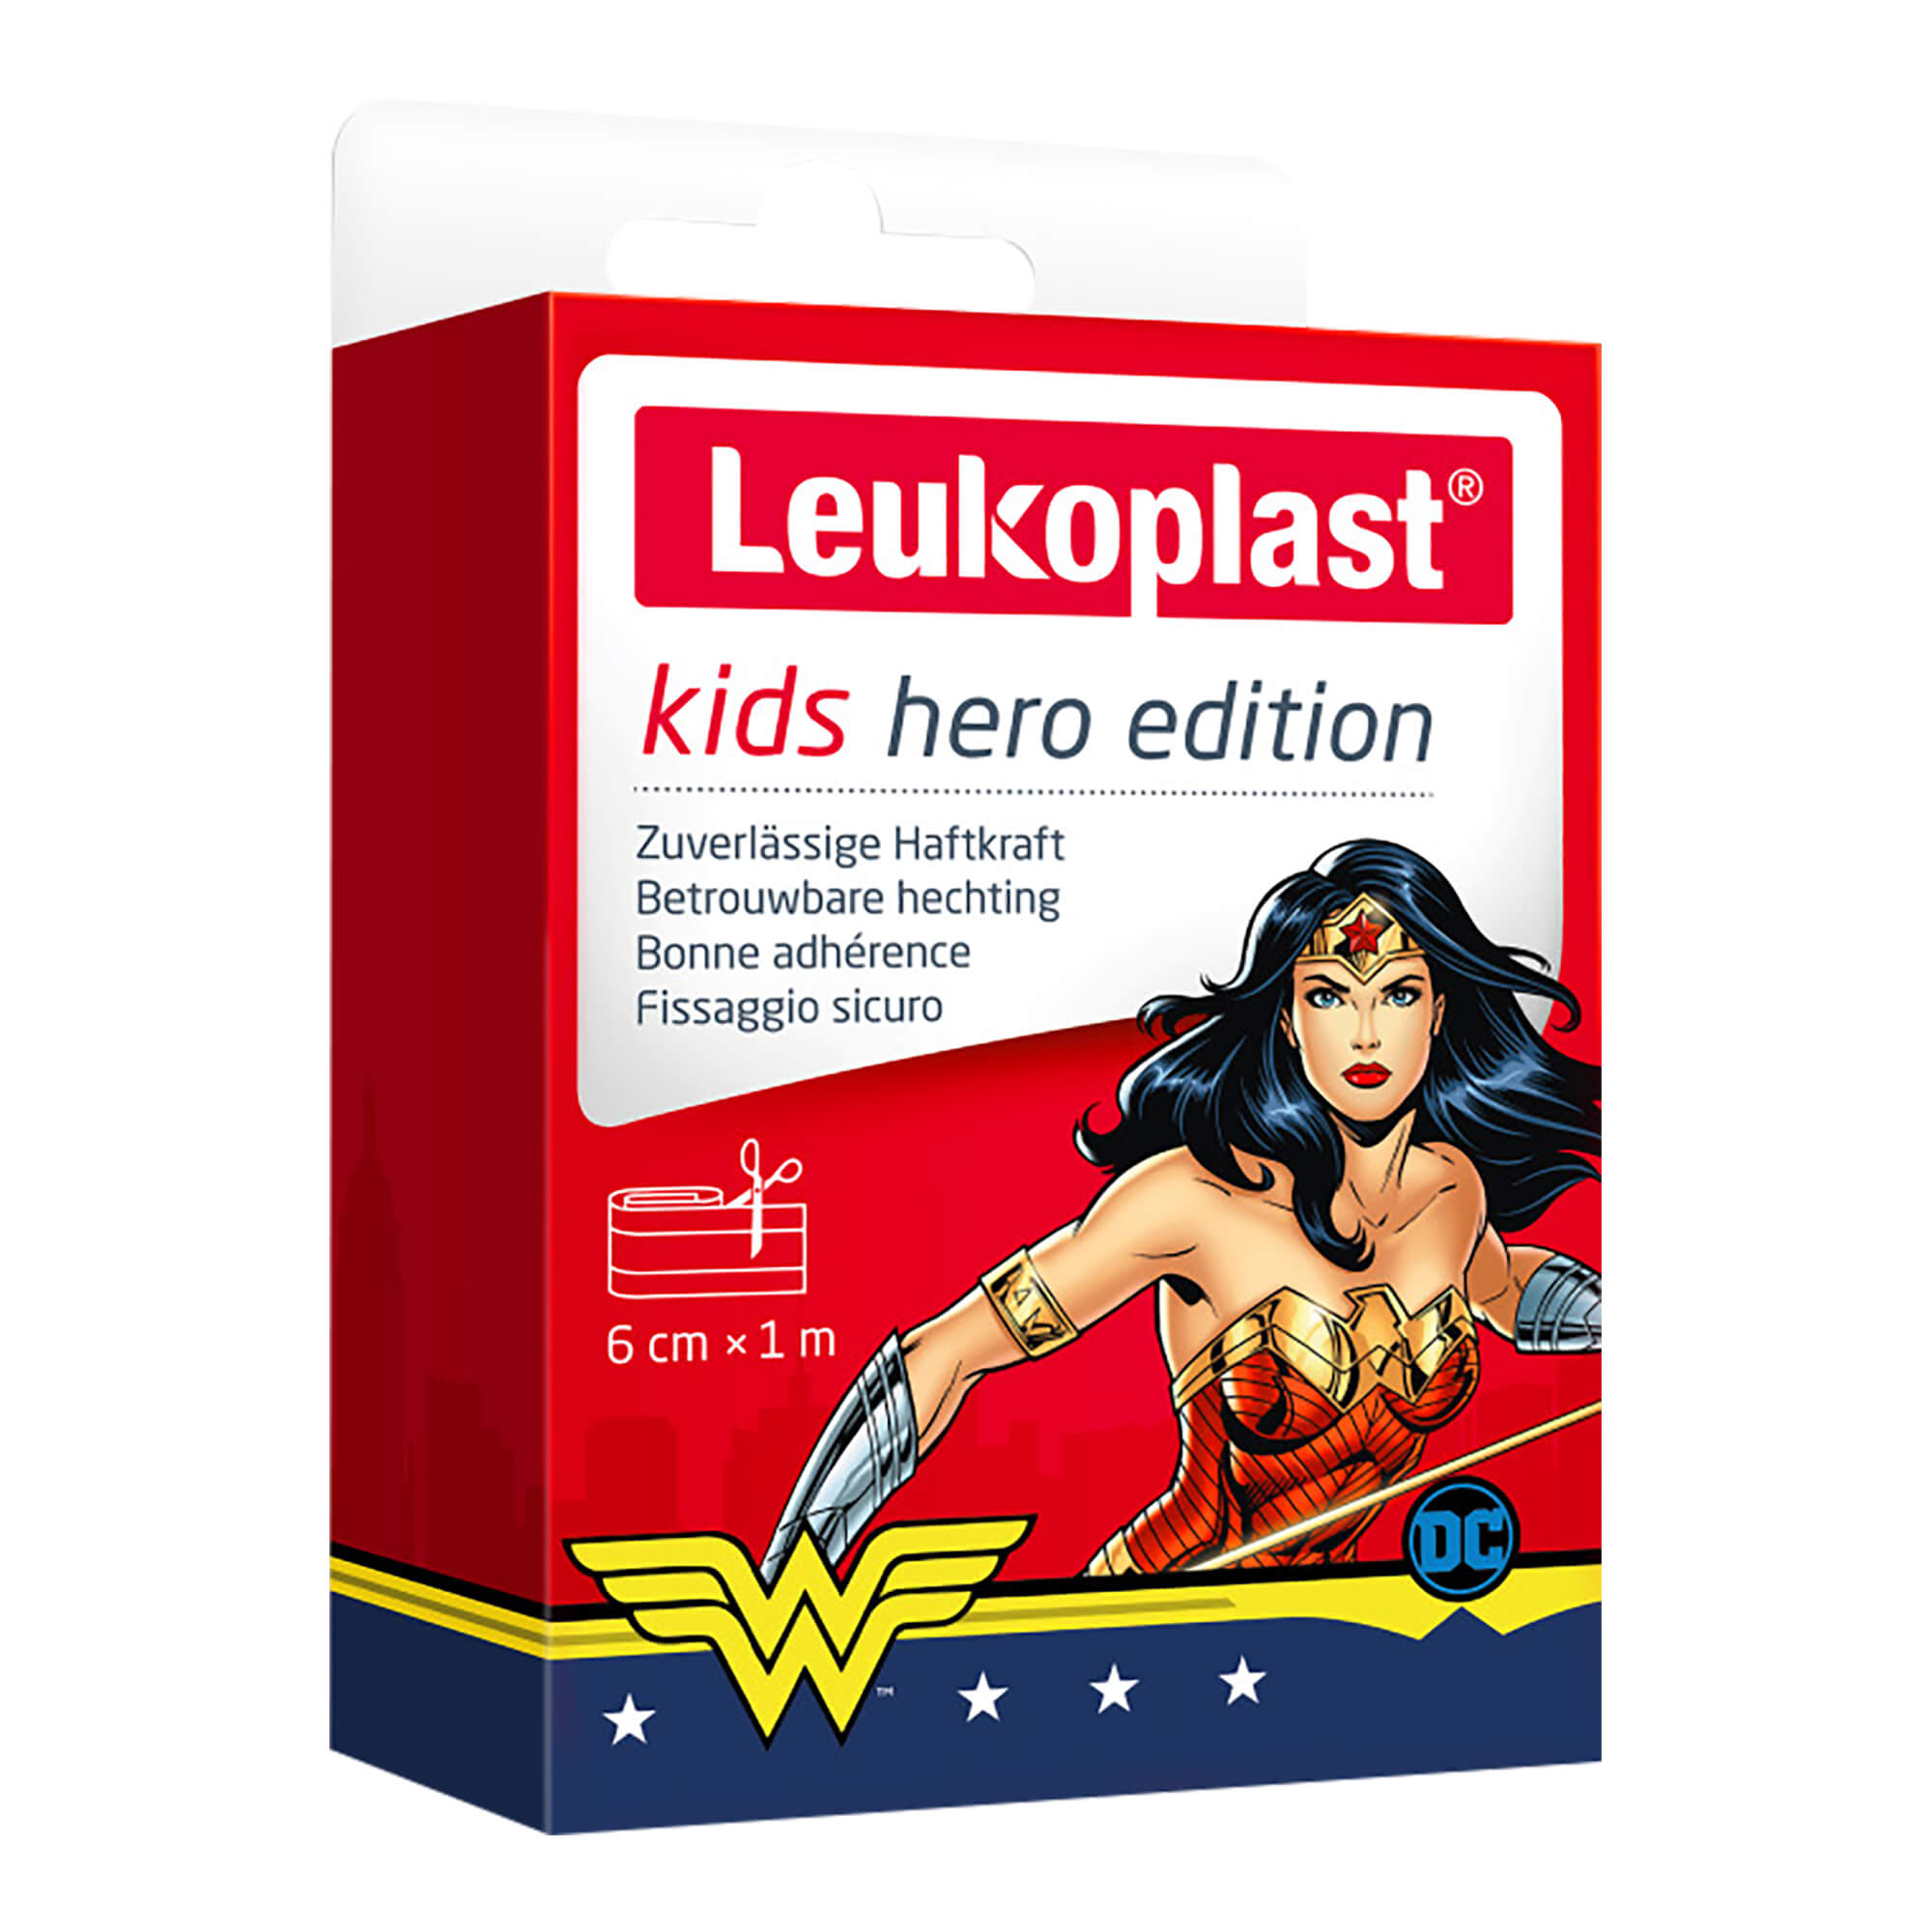 Für kleine Schnitt- und Schürfwunden bei Kindern. Wonder Woman-Motiv.